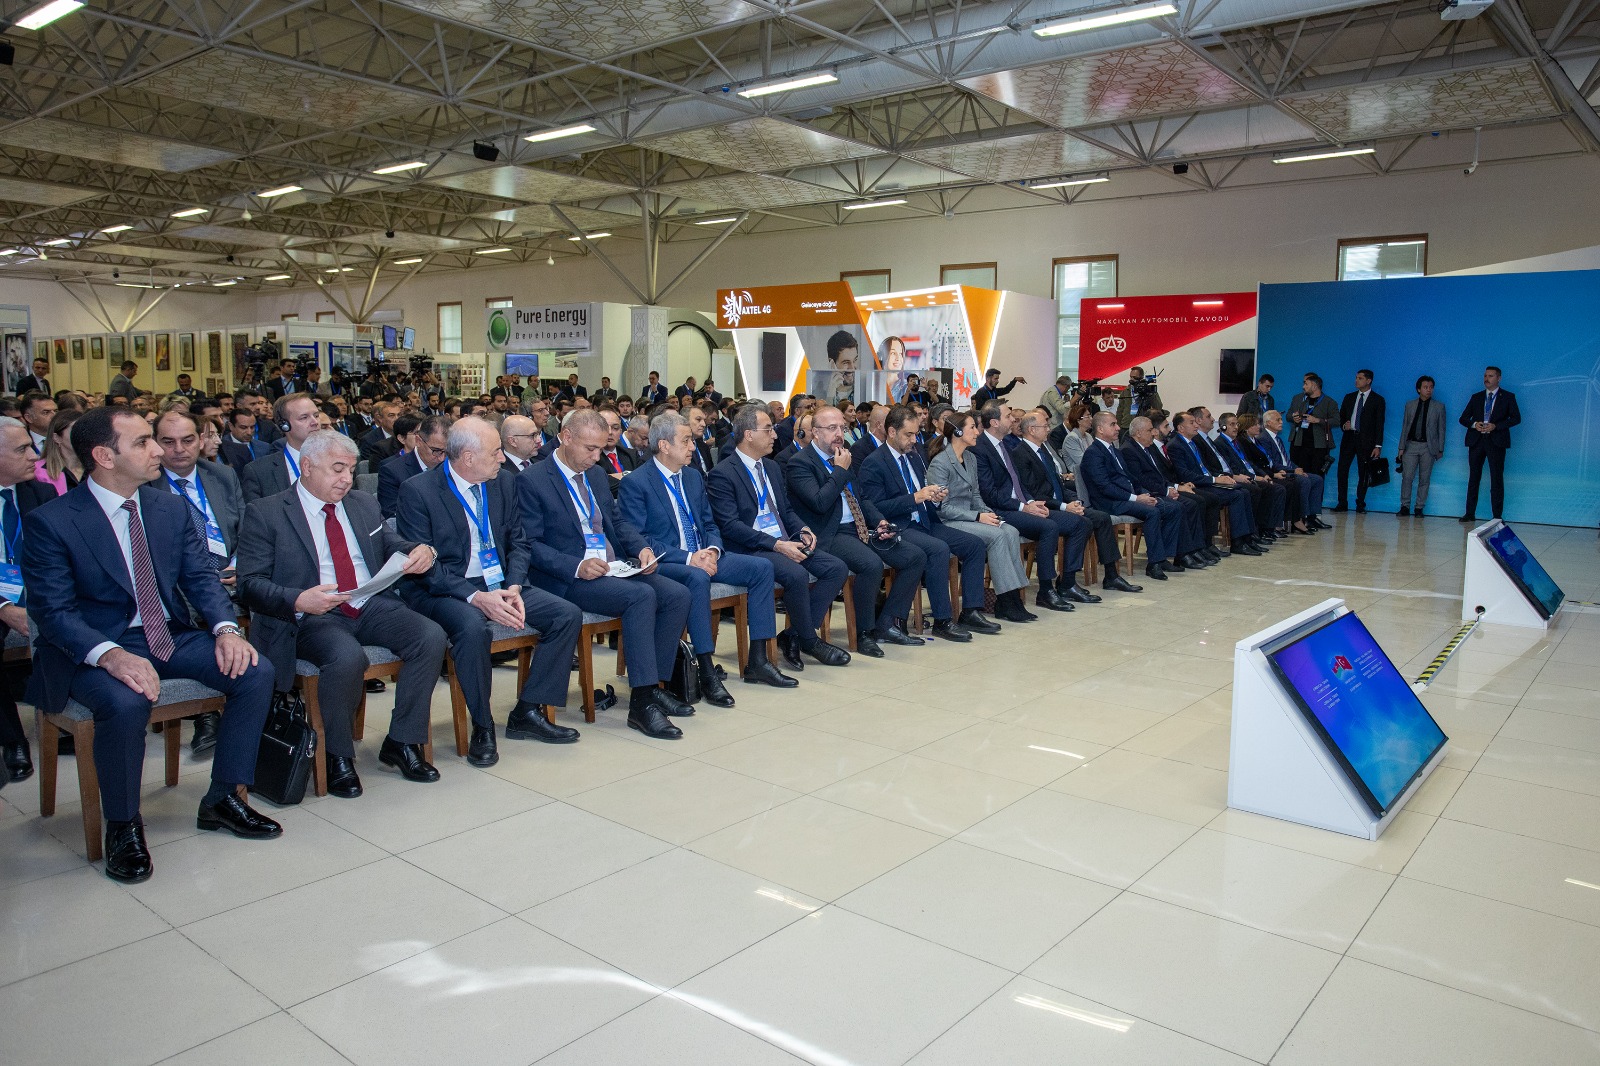 Azərbaycan-Türkiyə III Enerji Forumu və “Naxçıvan - Yaşıl Enerji Zonası” Beynəlxalq Konfransı keçirilib